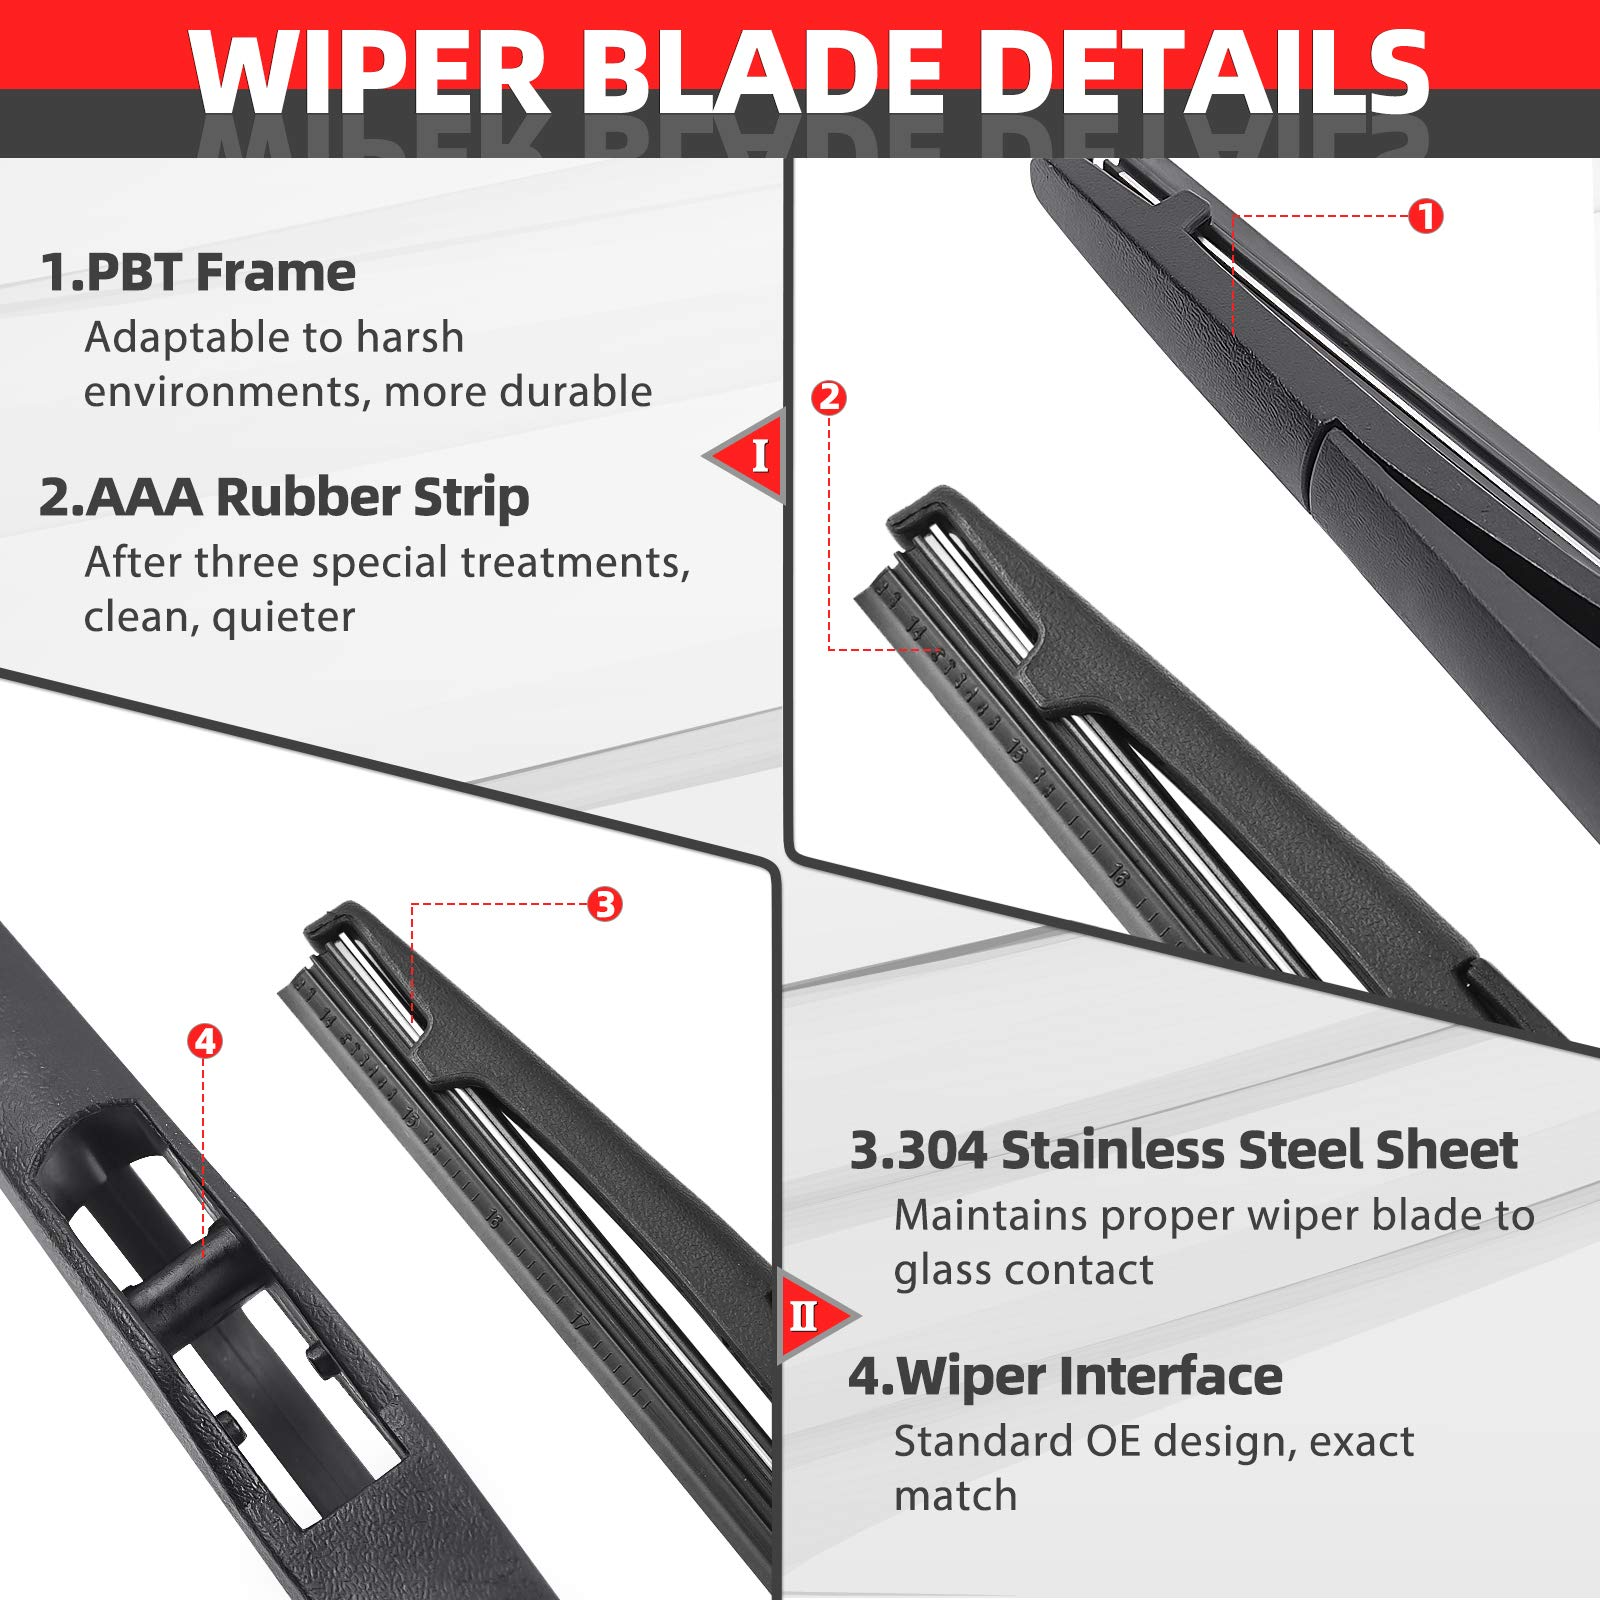 Rear Windshield Wiper Arm Blade Set for Hyundai Santa Fe 2013-2017